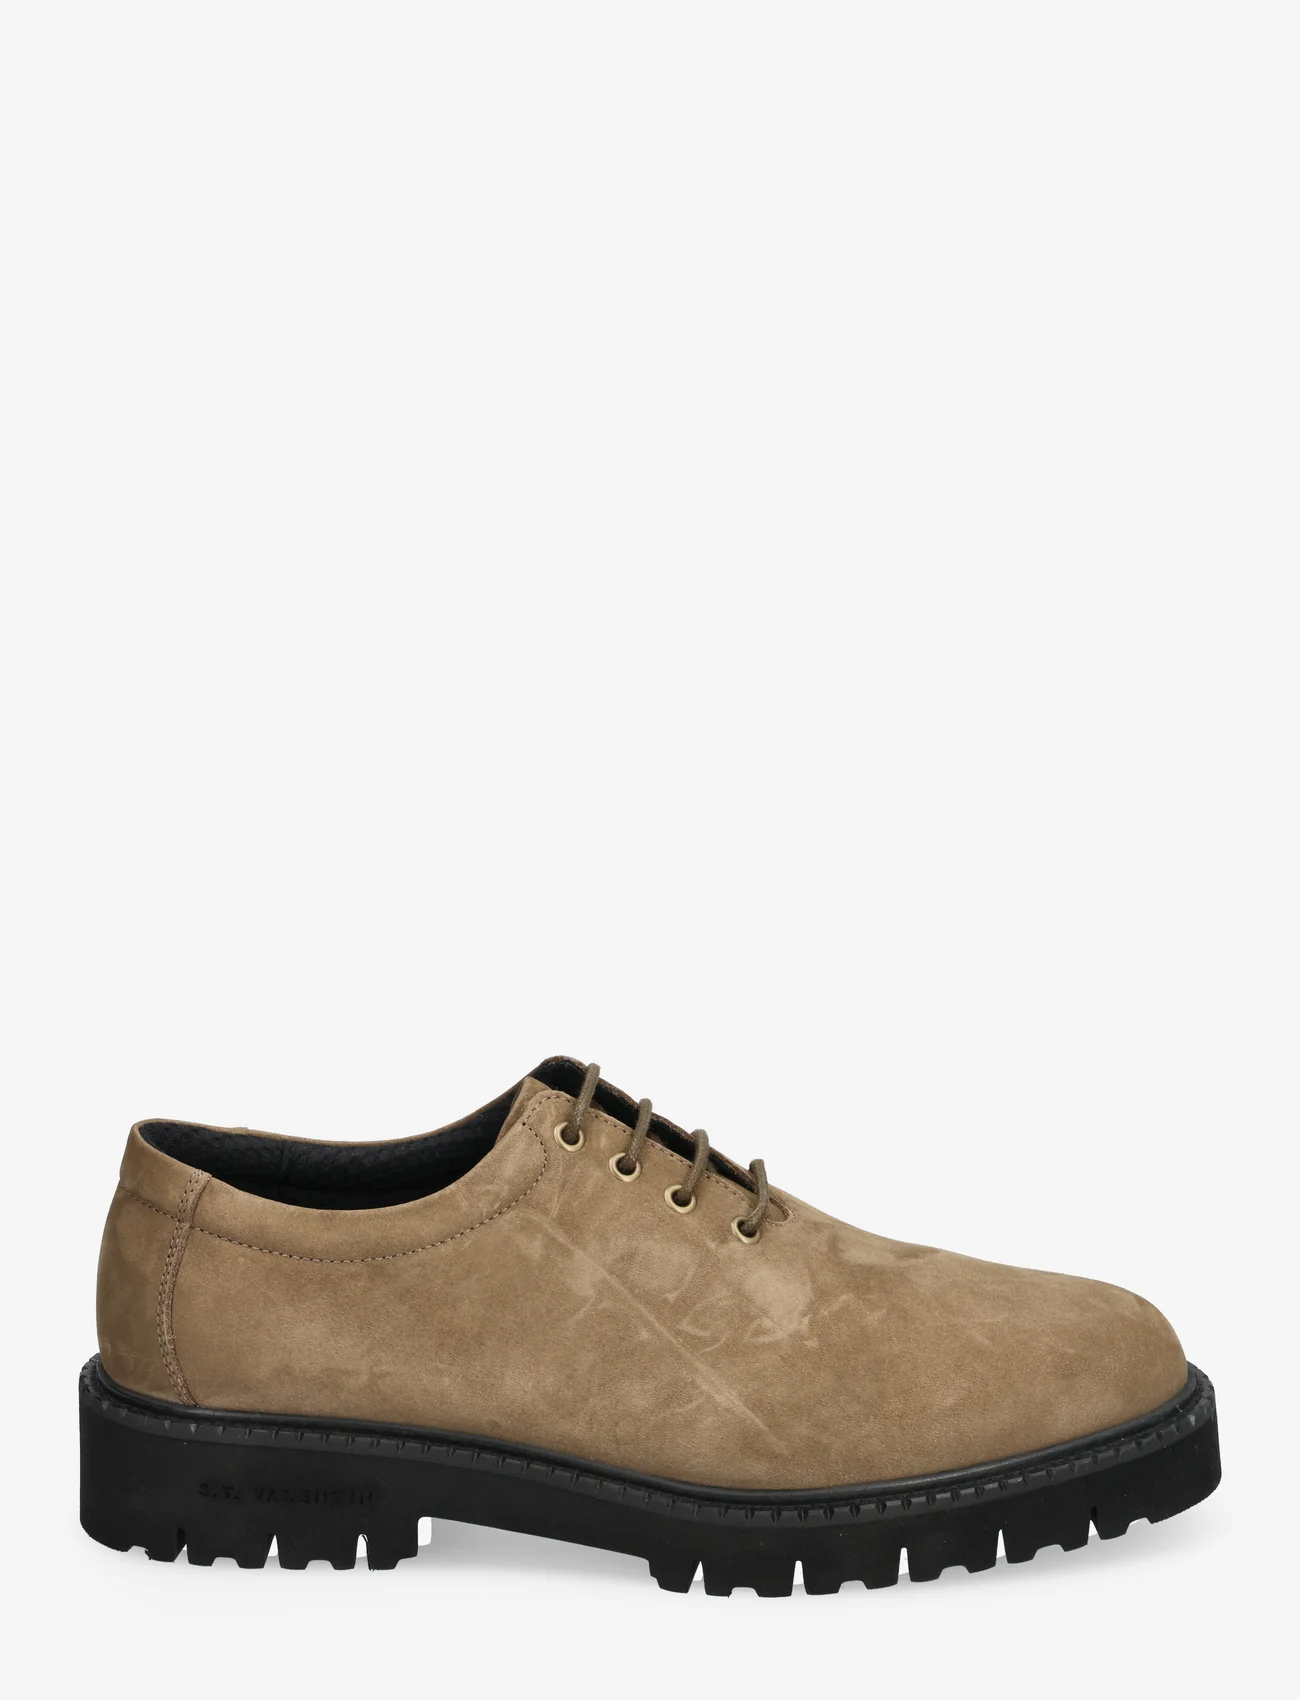 S.T. VALENTIN - Lightweight NSB - Grained leather - Šņorējamas kurpes - taupe - 1